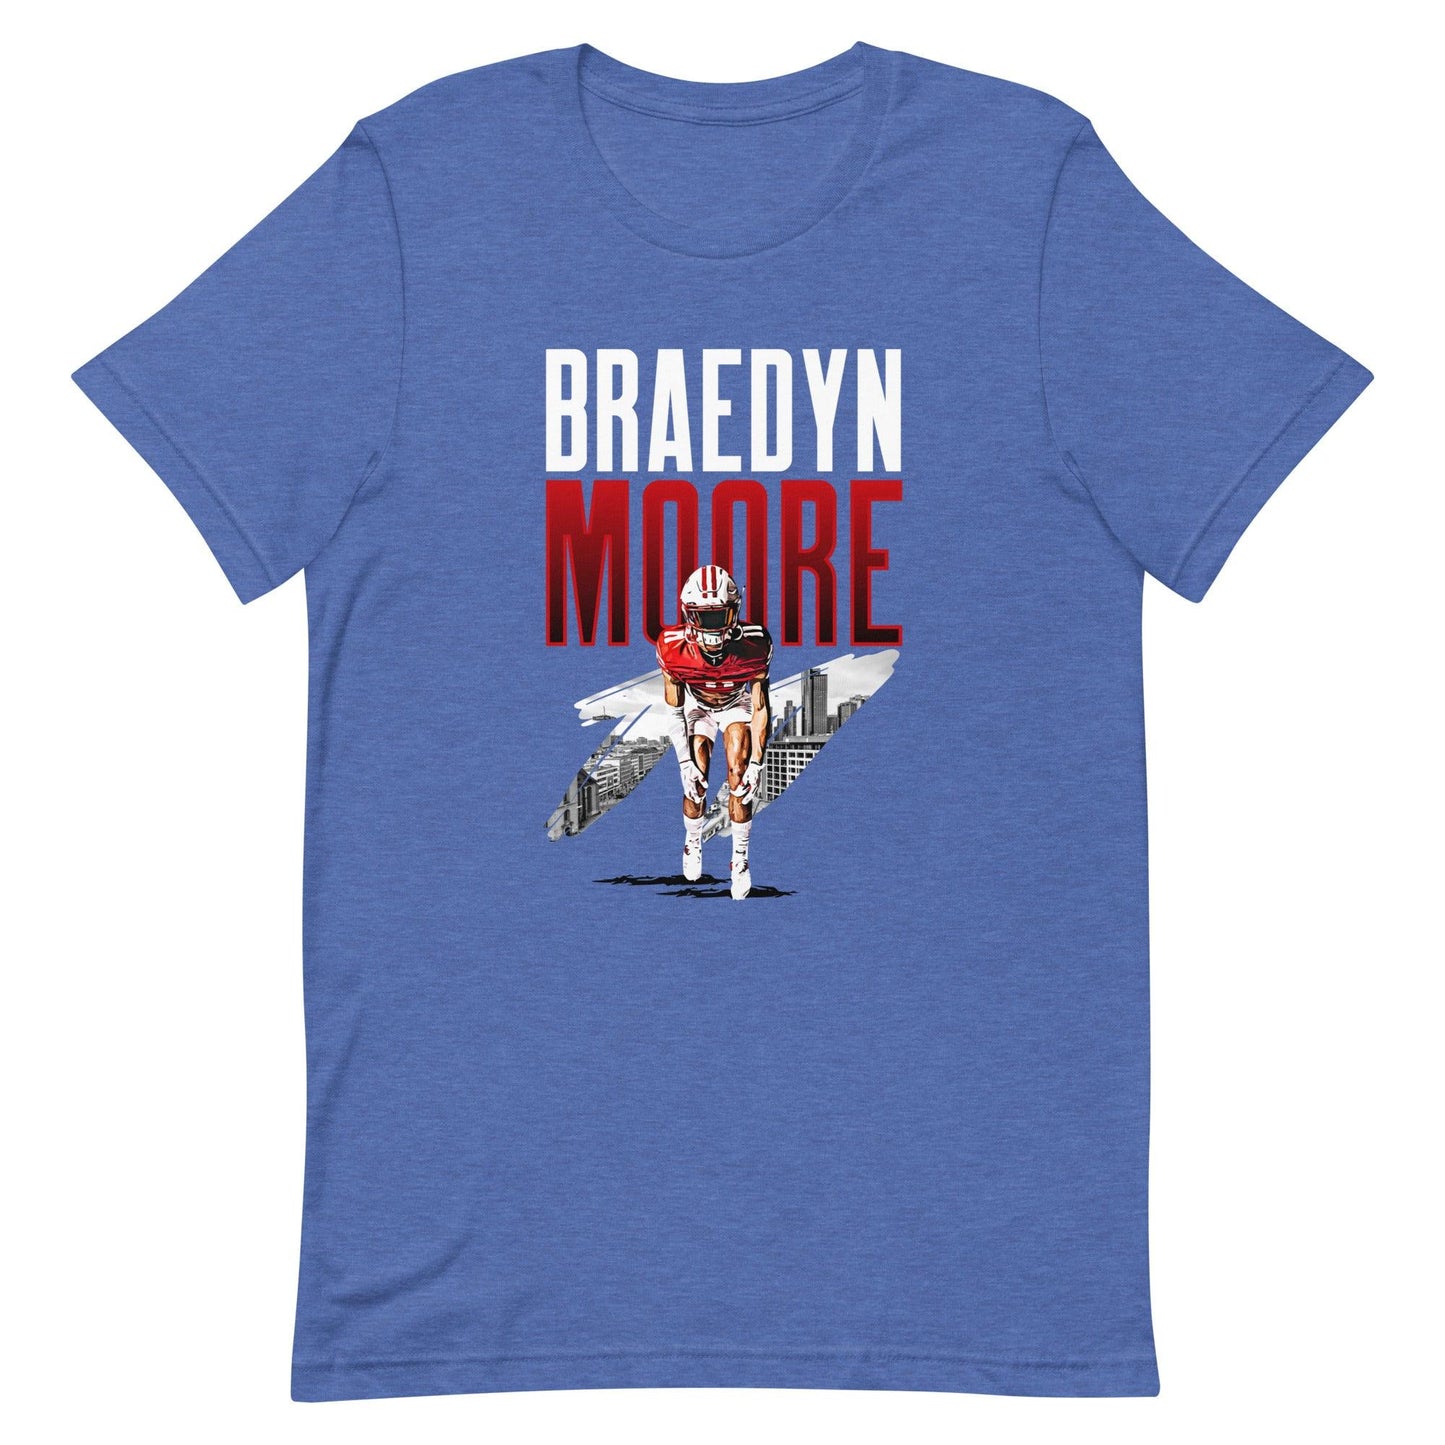 Braedyn Moore "Gameday" t-shirt - Fan Arch